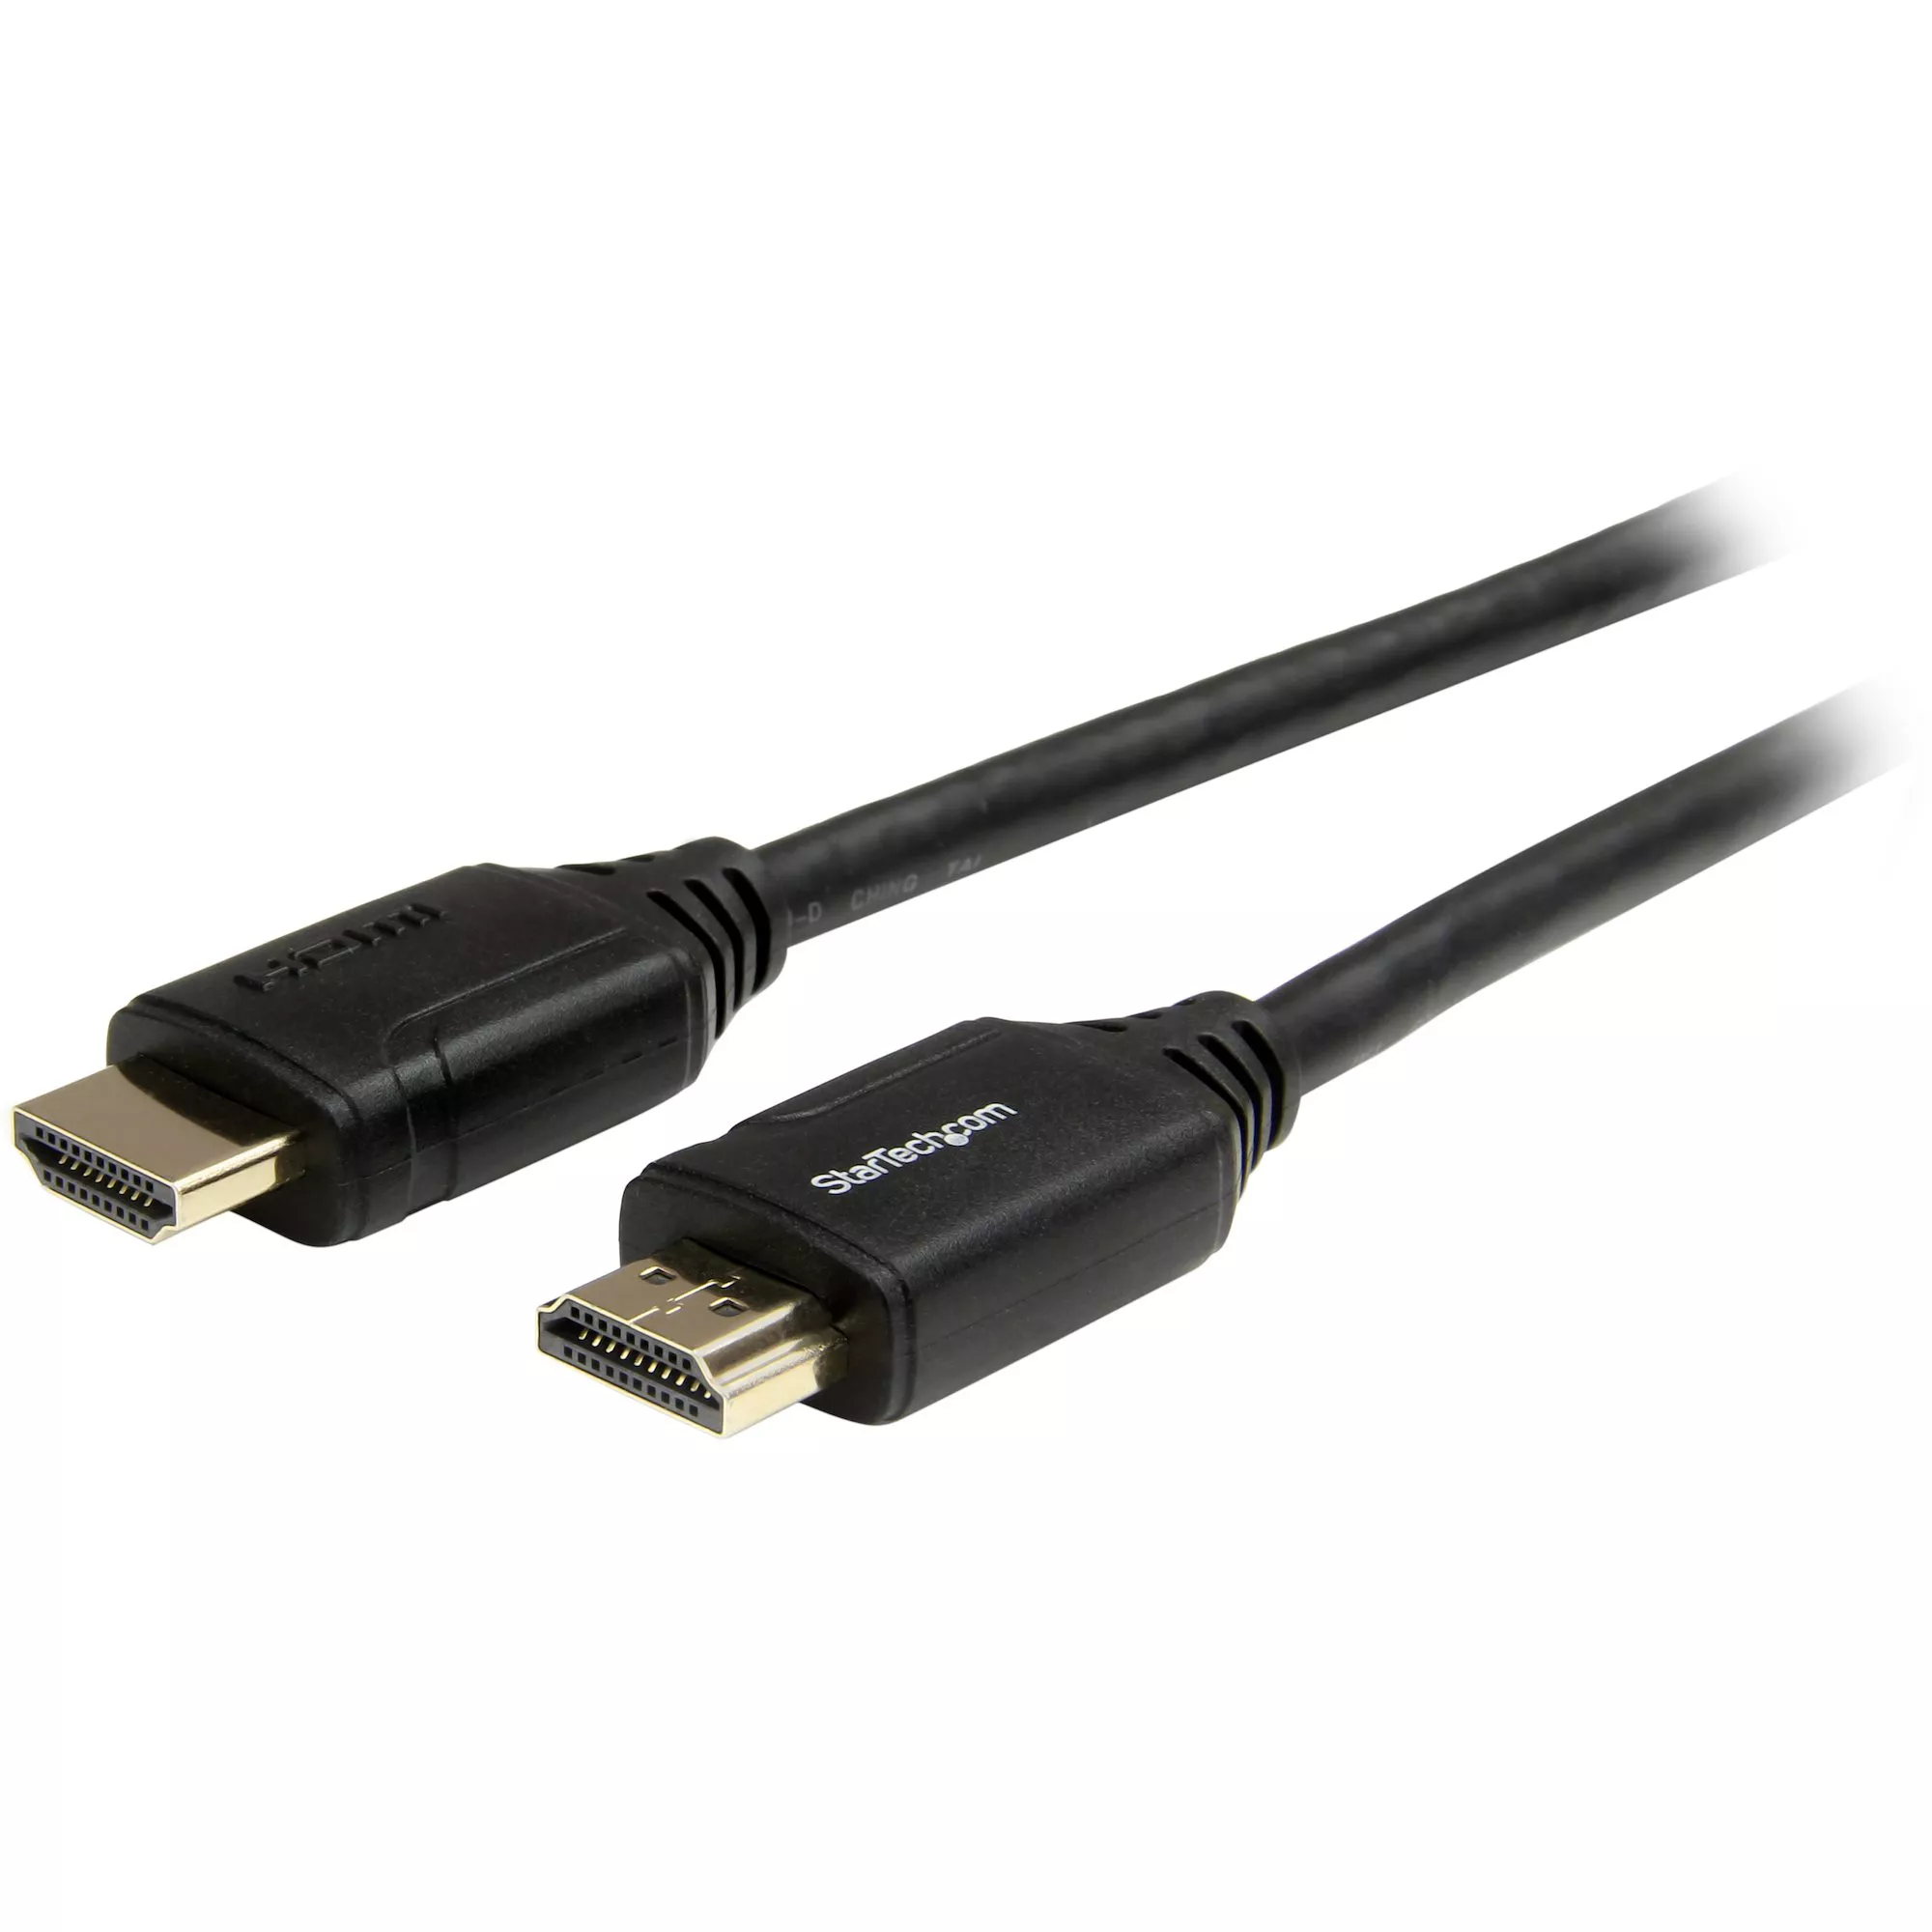 Revendeur officiel StarTech.com Câble HDMI grande vitesse haute qualité avec